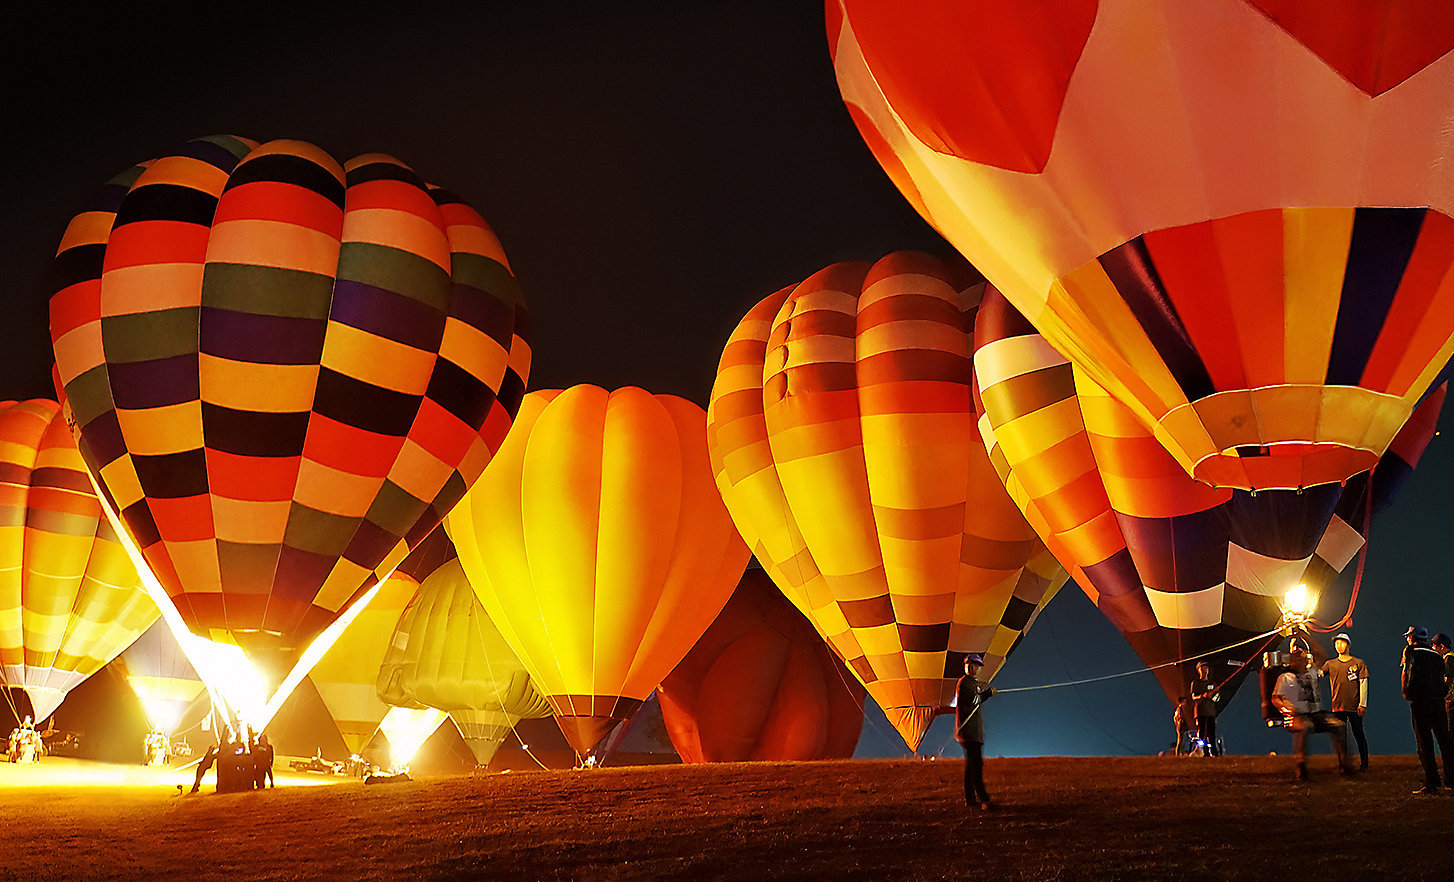 Image de montgolfières multicolores qui s'envolent dans la nuit